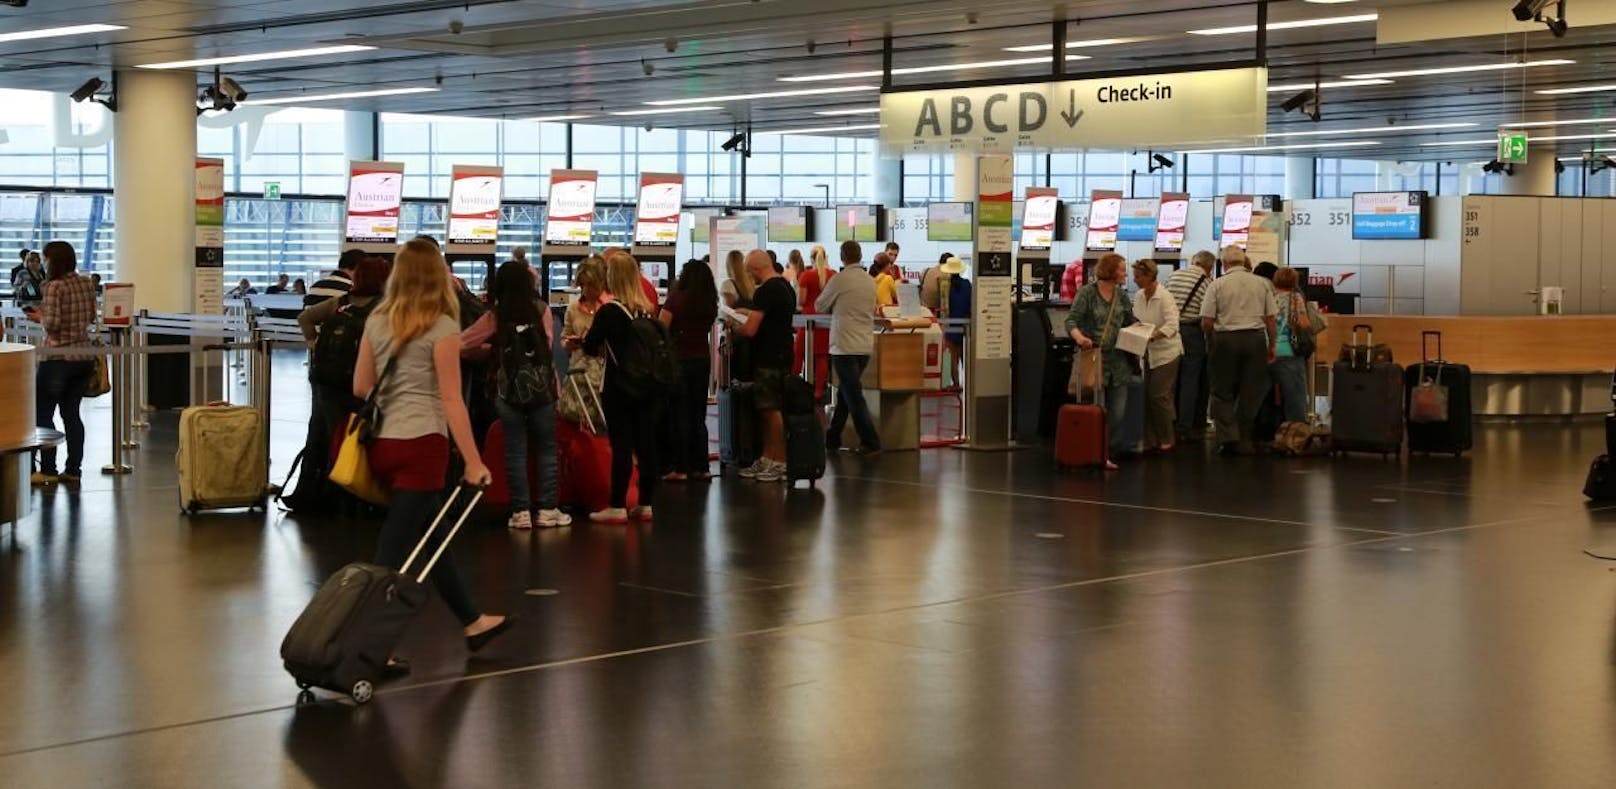 Der Flughafen Wien hat im September ein deutlichen Passagierplus verzeichnet.